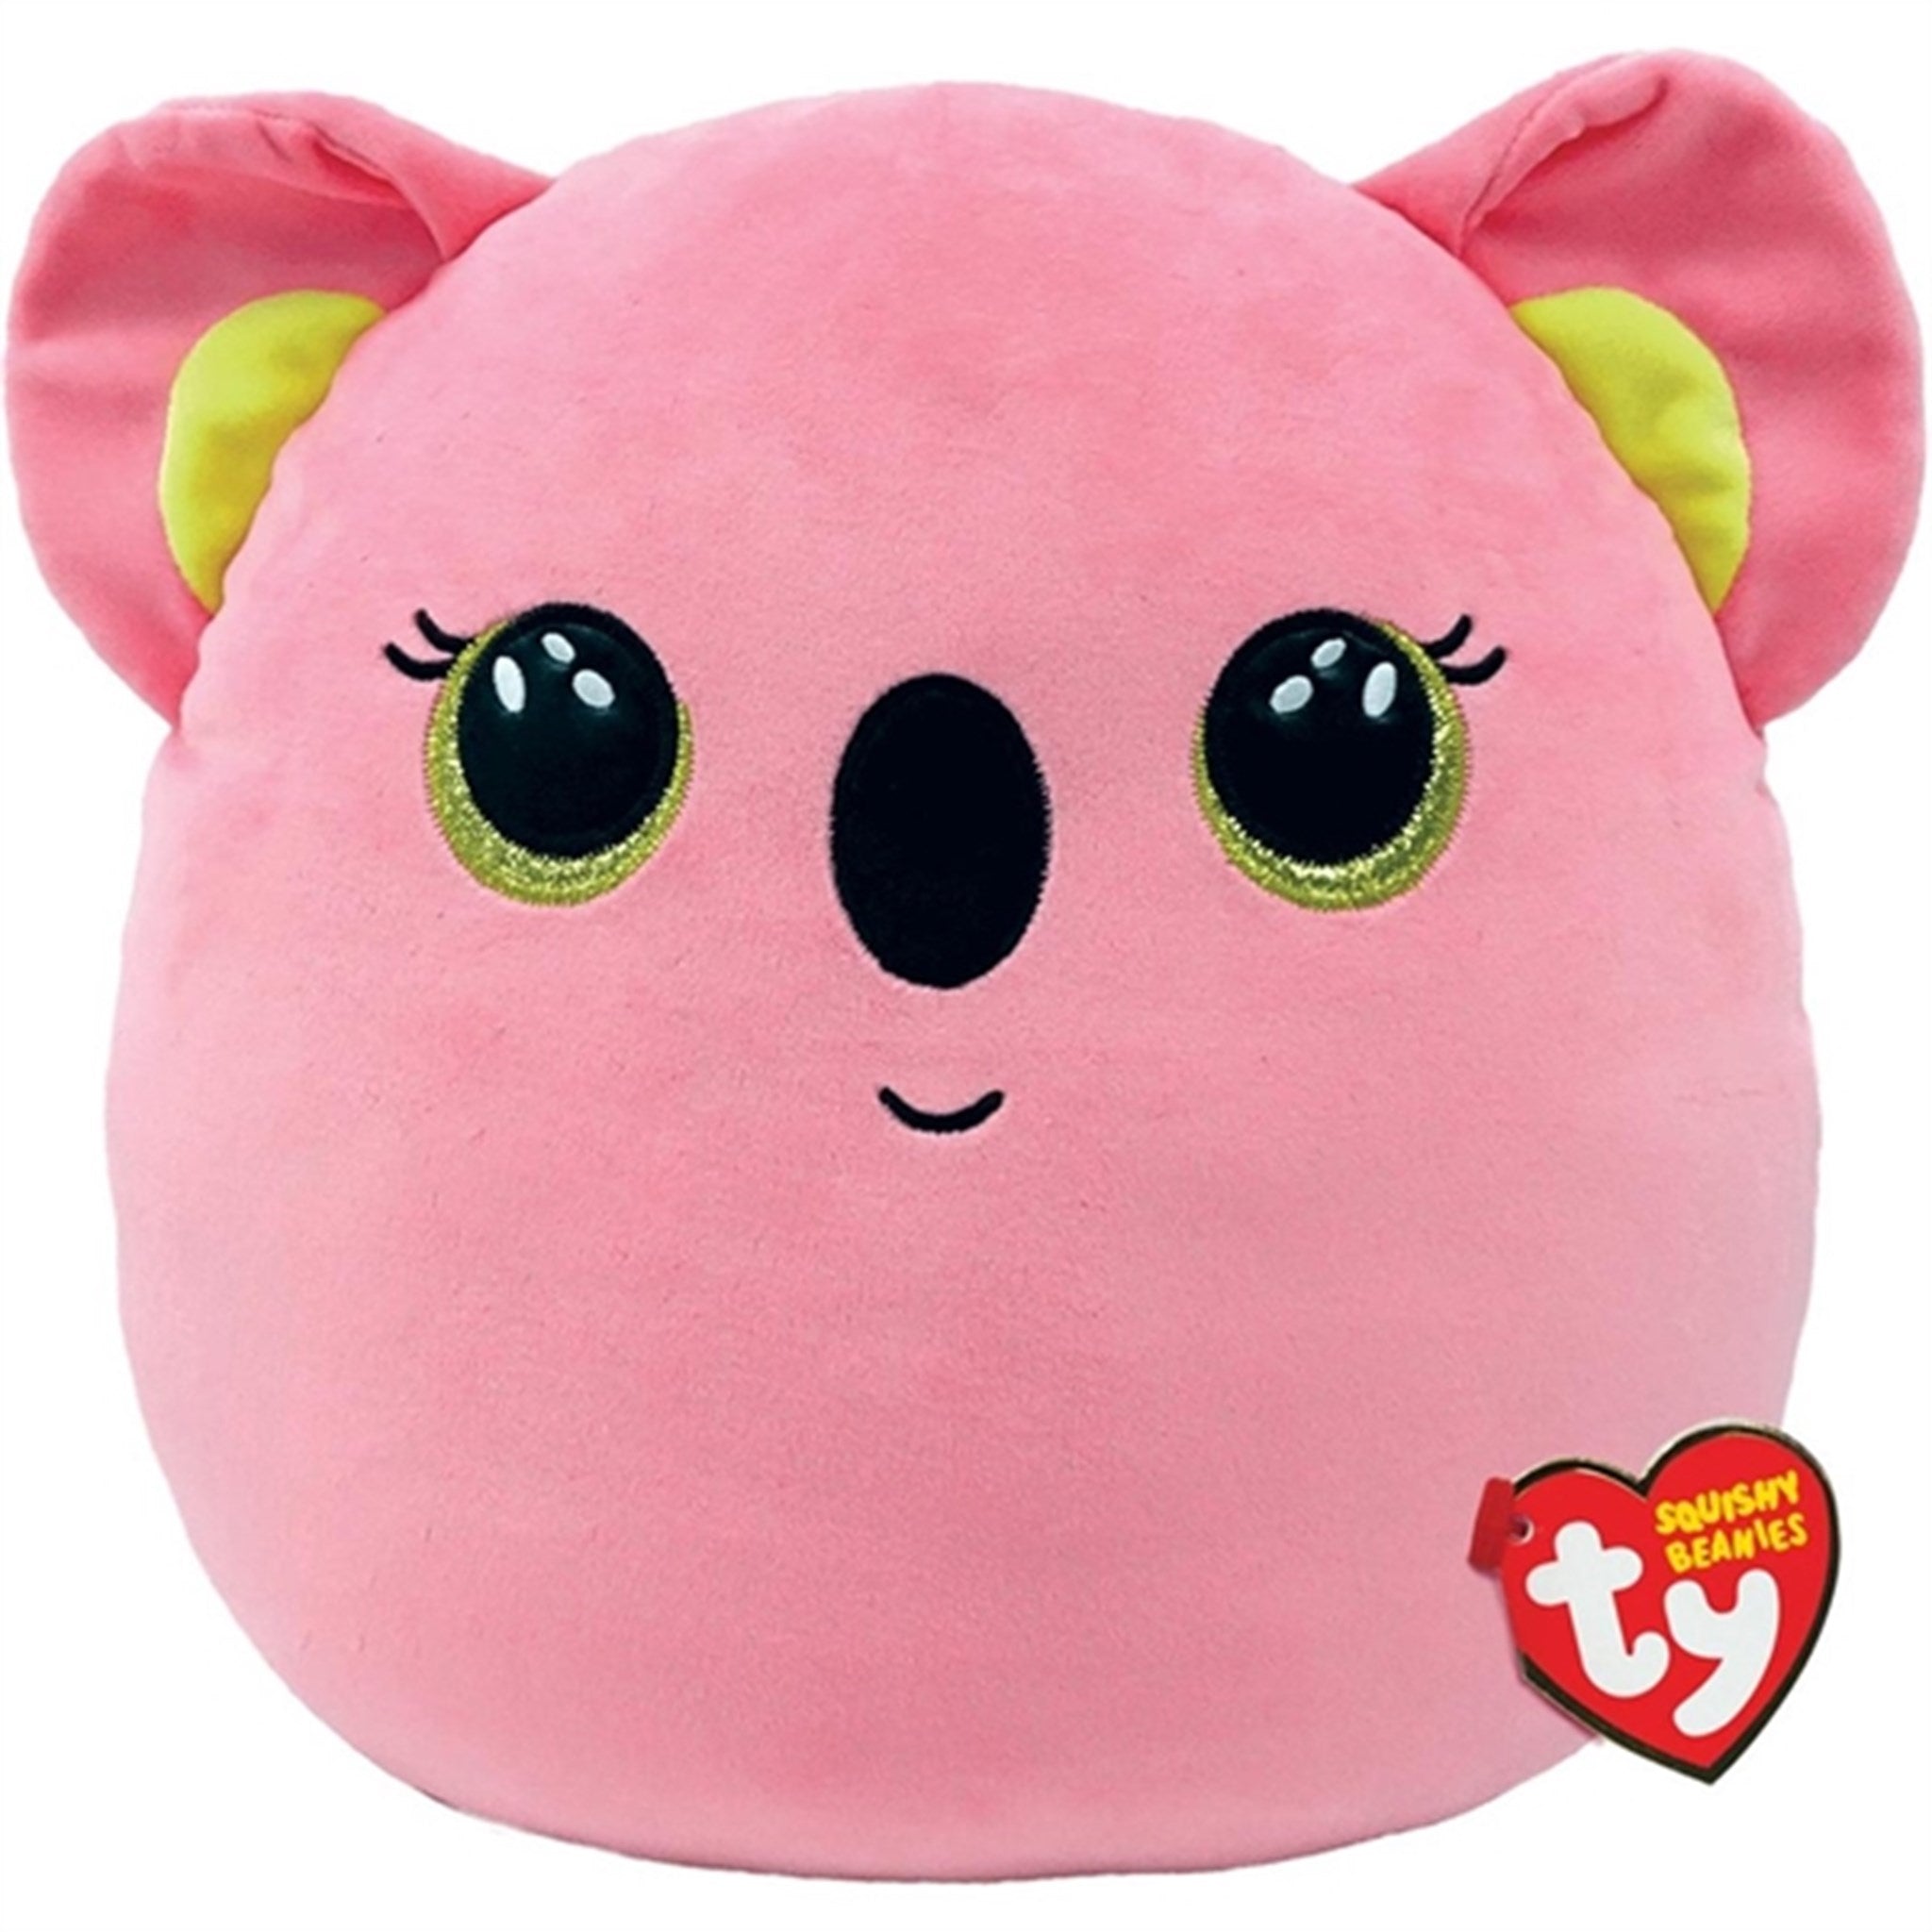 TY Squishy Beanies Poppy - Pink Koala Squish 35cm